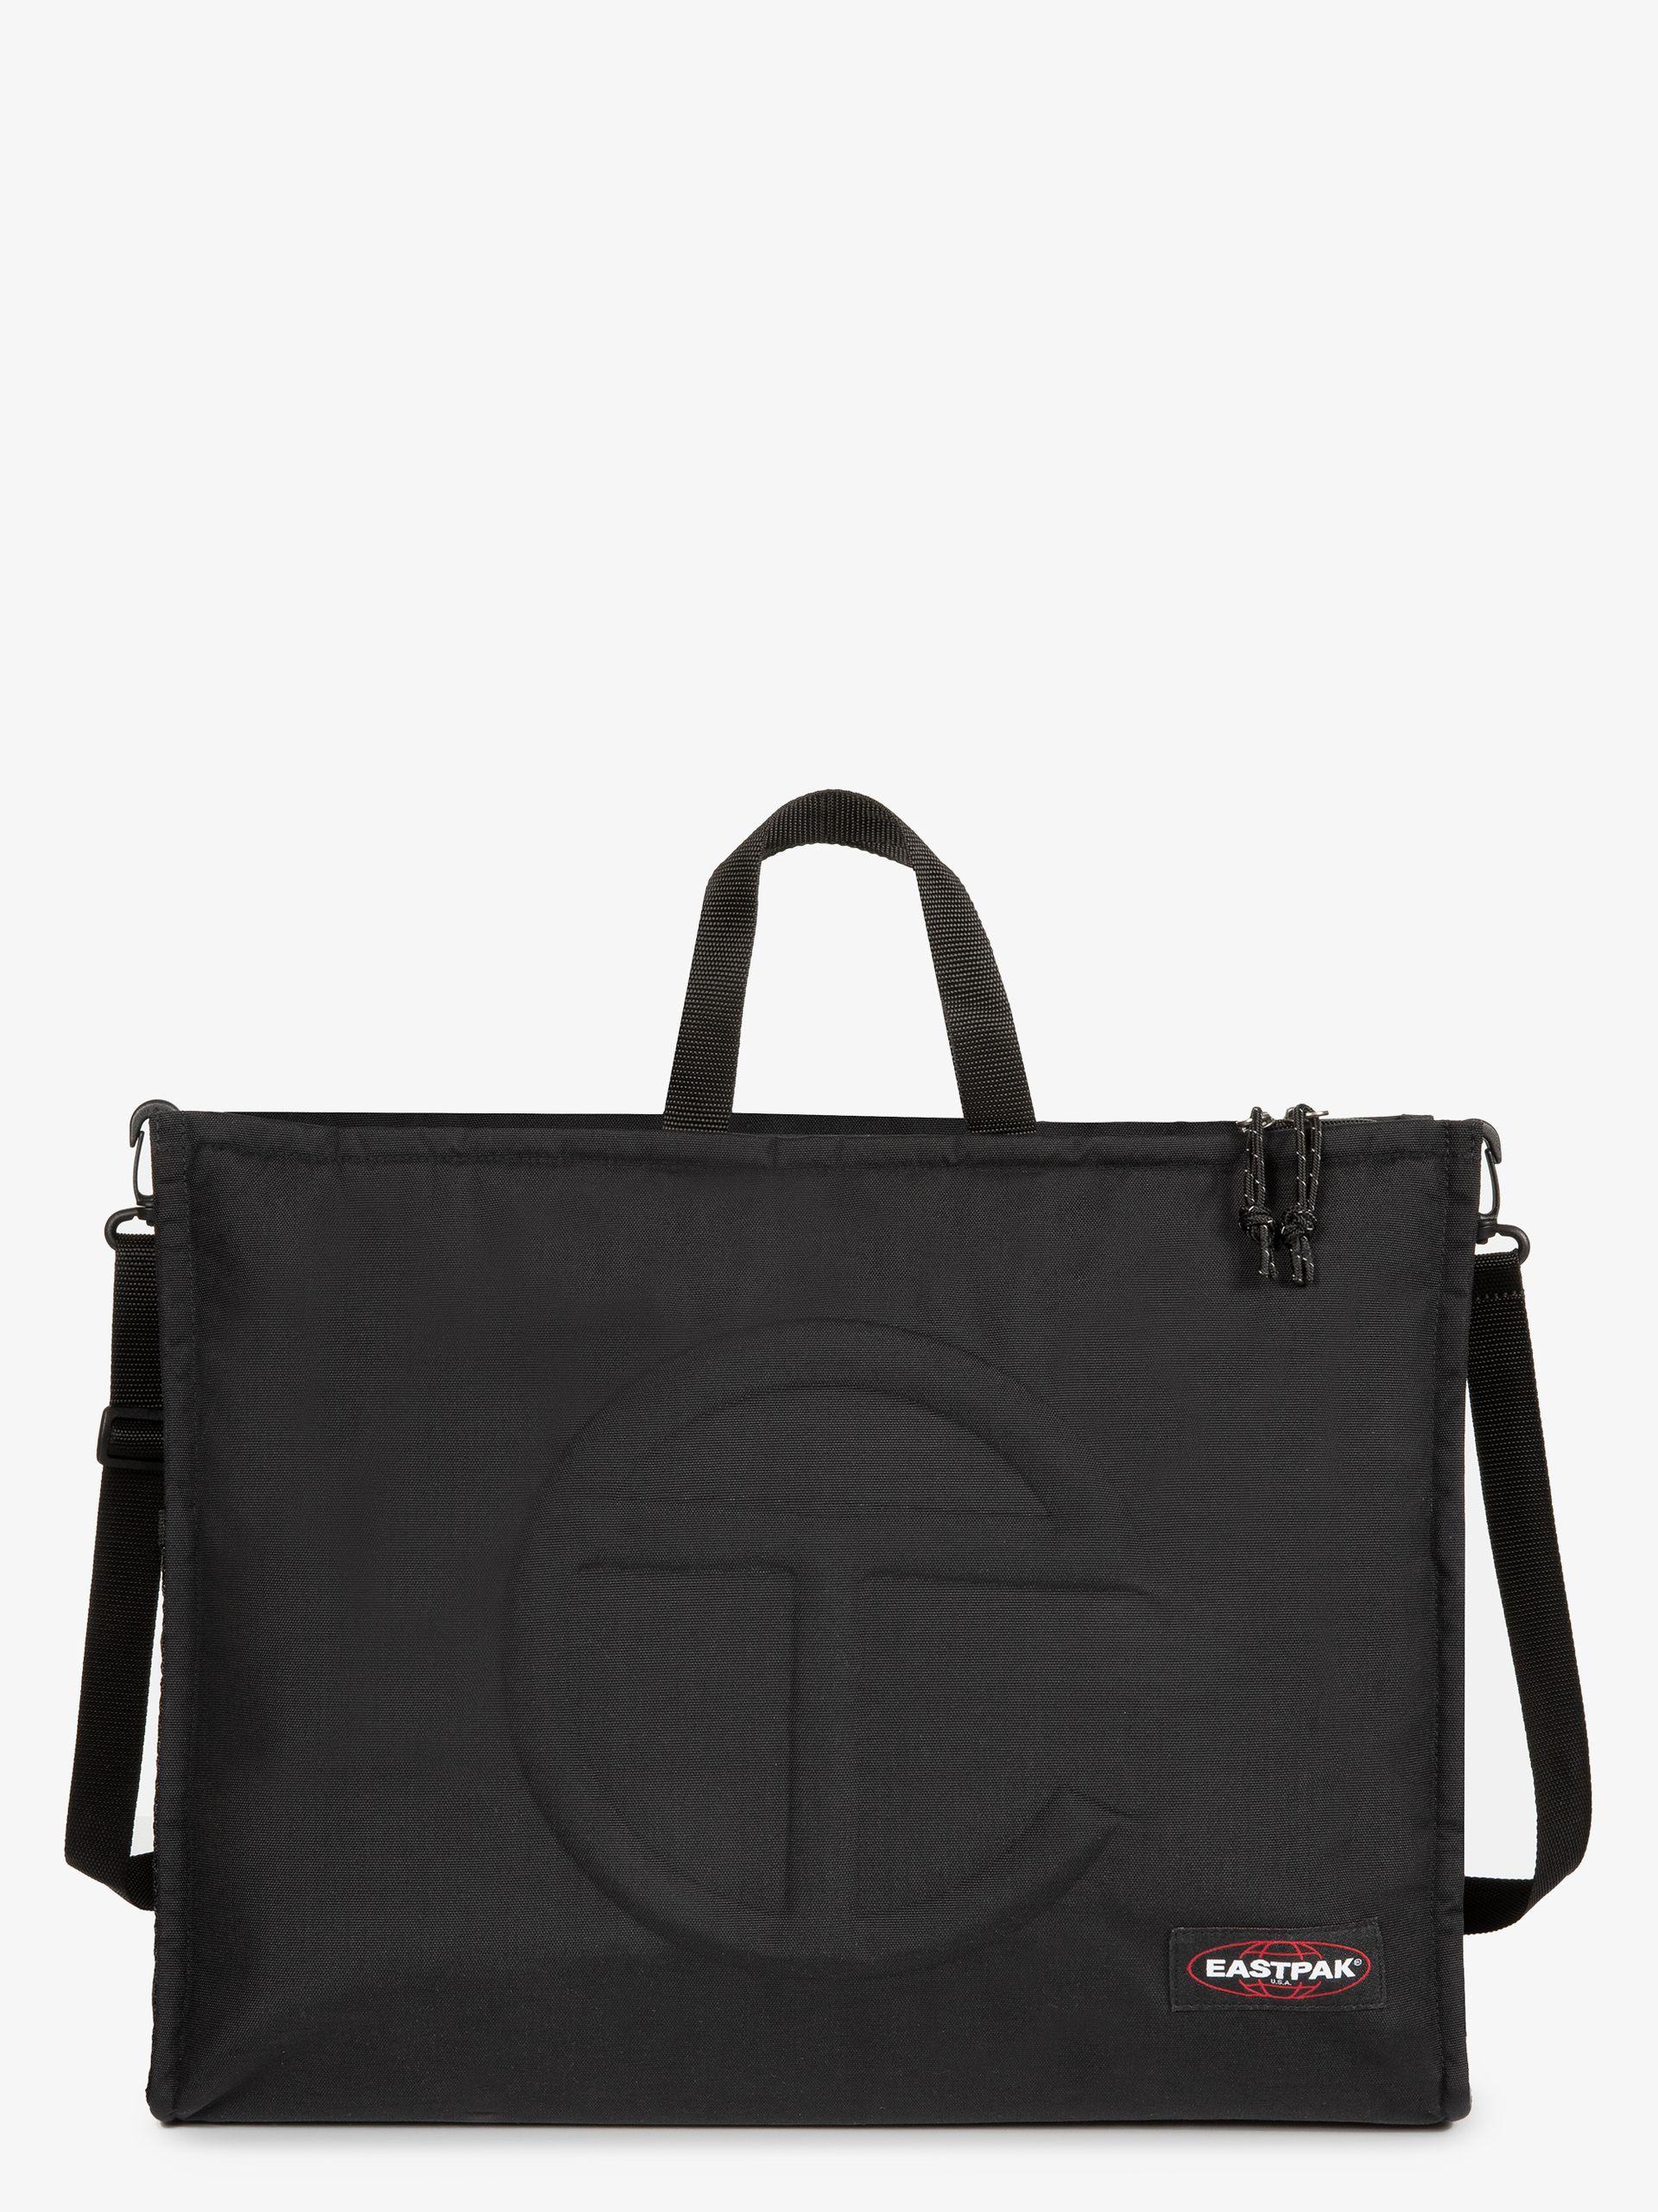 Eastpak X Telfar Shopper Large Tote Bag in Black for Men | Lyst